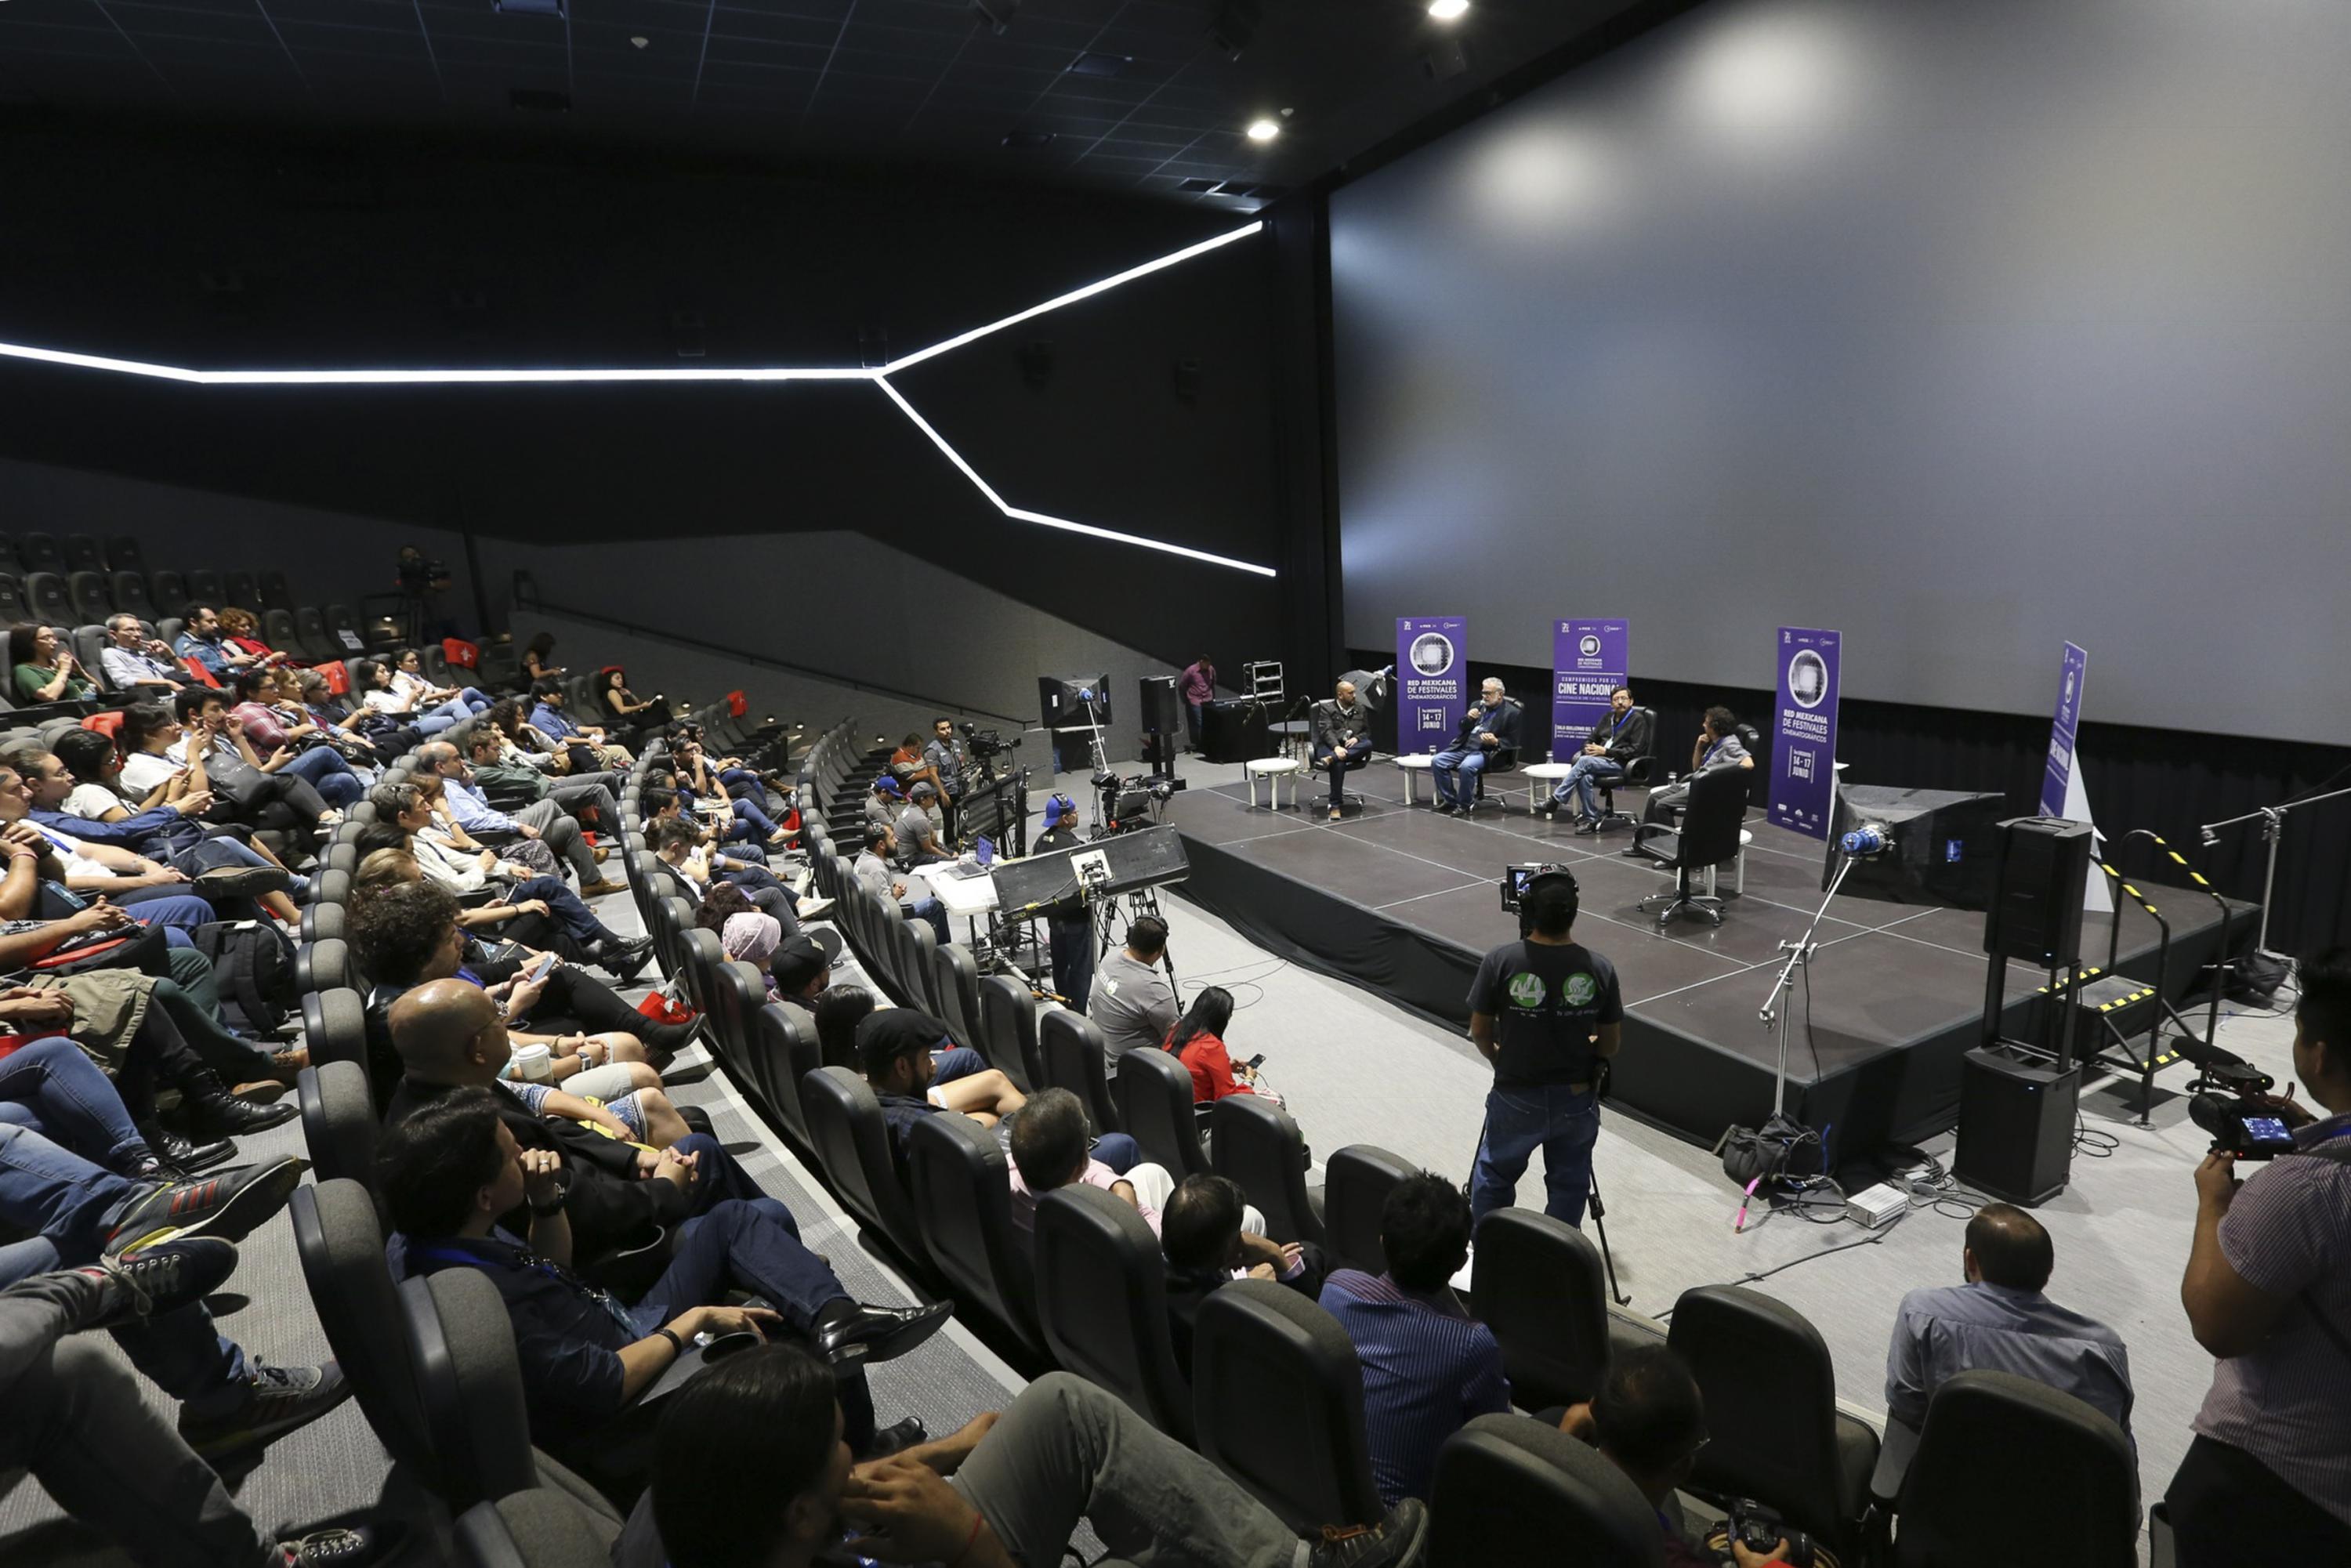 Vista de la sala Guillermo del Toro con el publico asistente a la conferencia